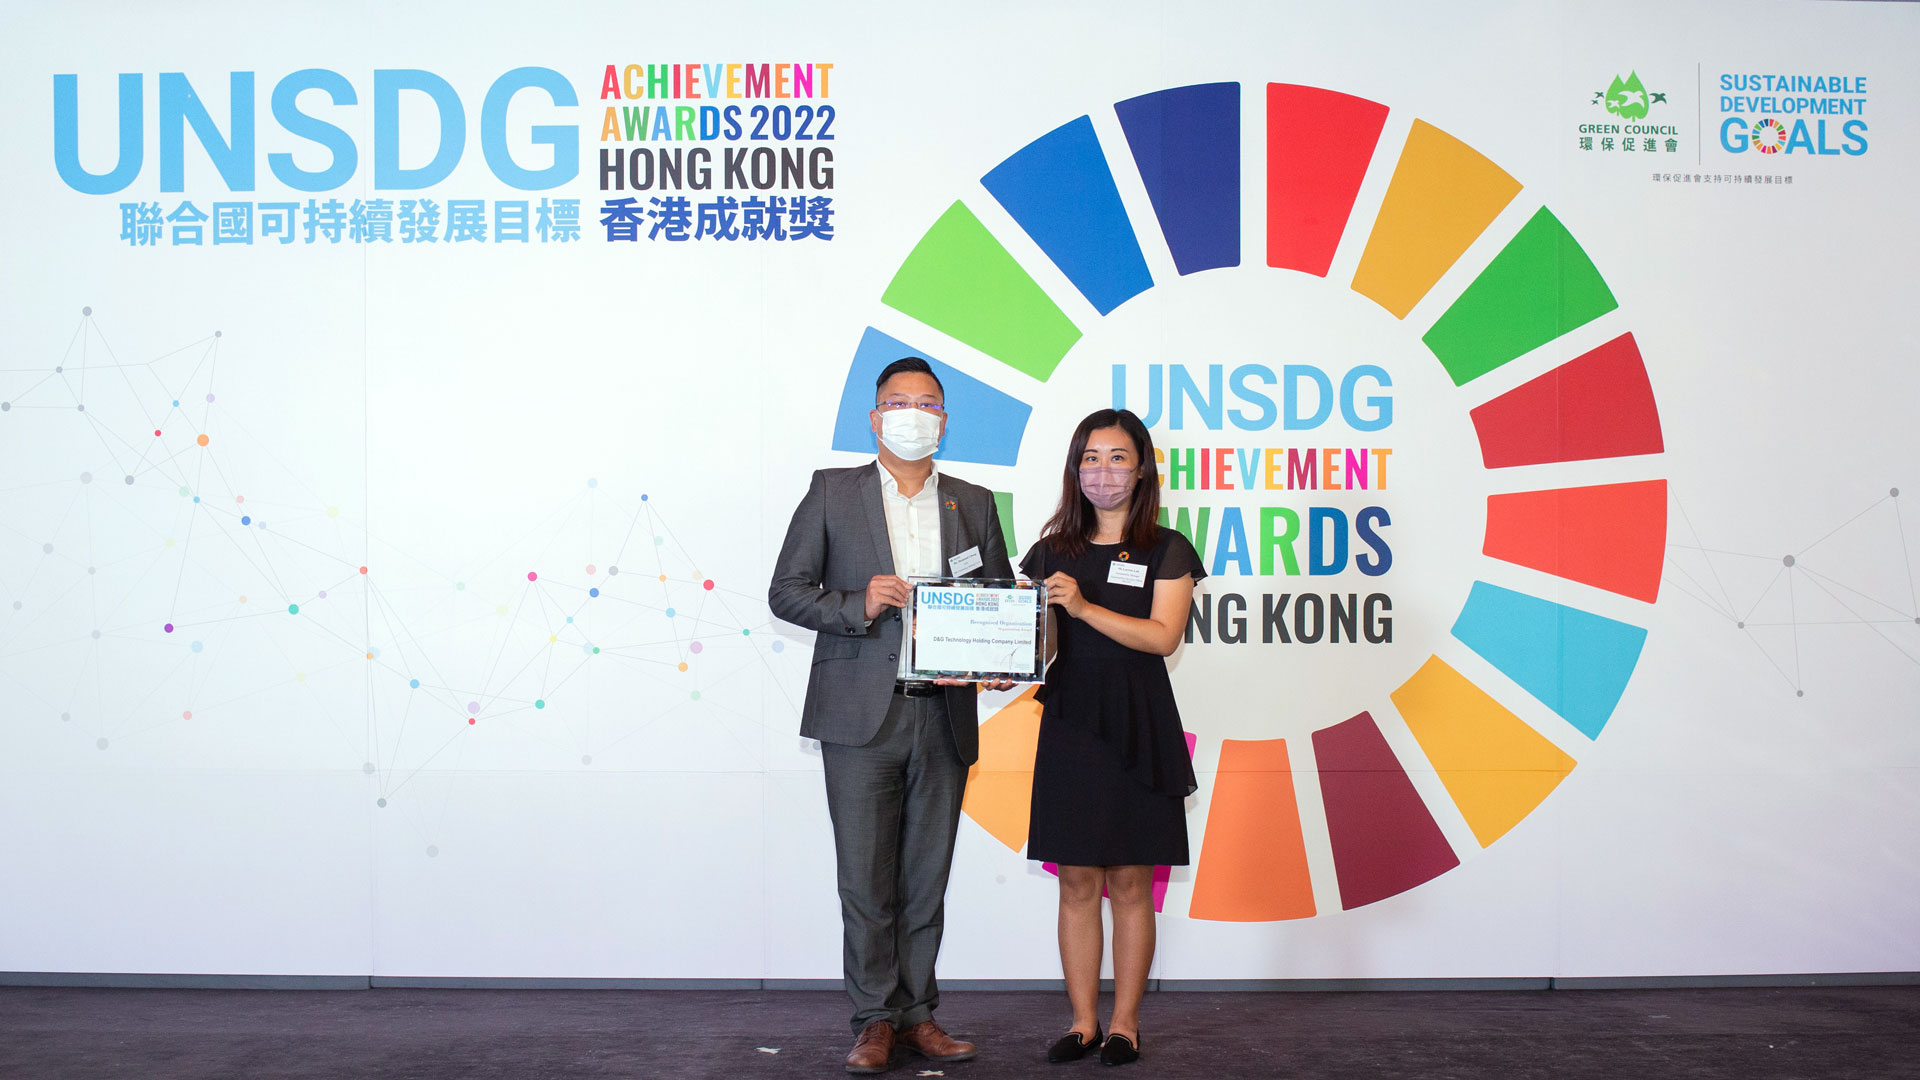 D&G Technology won UNSDG Achievement Awards 2022 Hong Kong – Recognized Organization